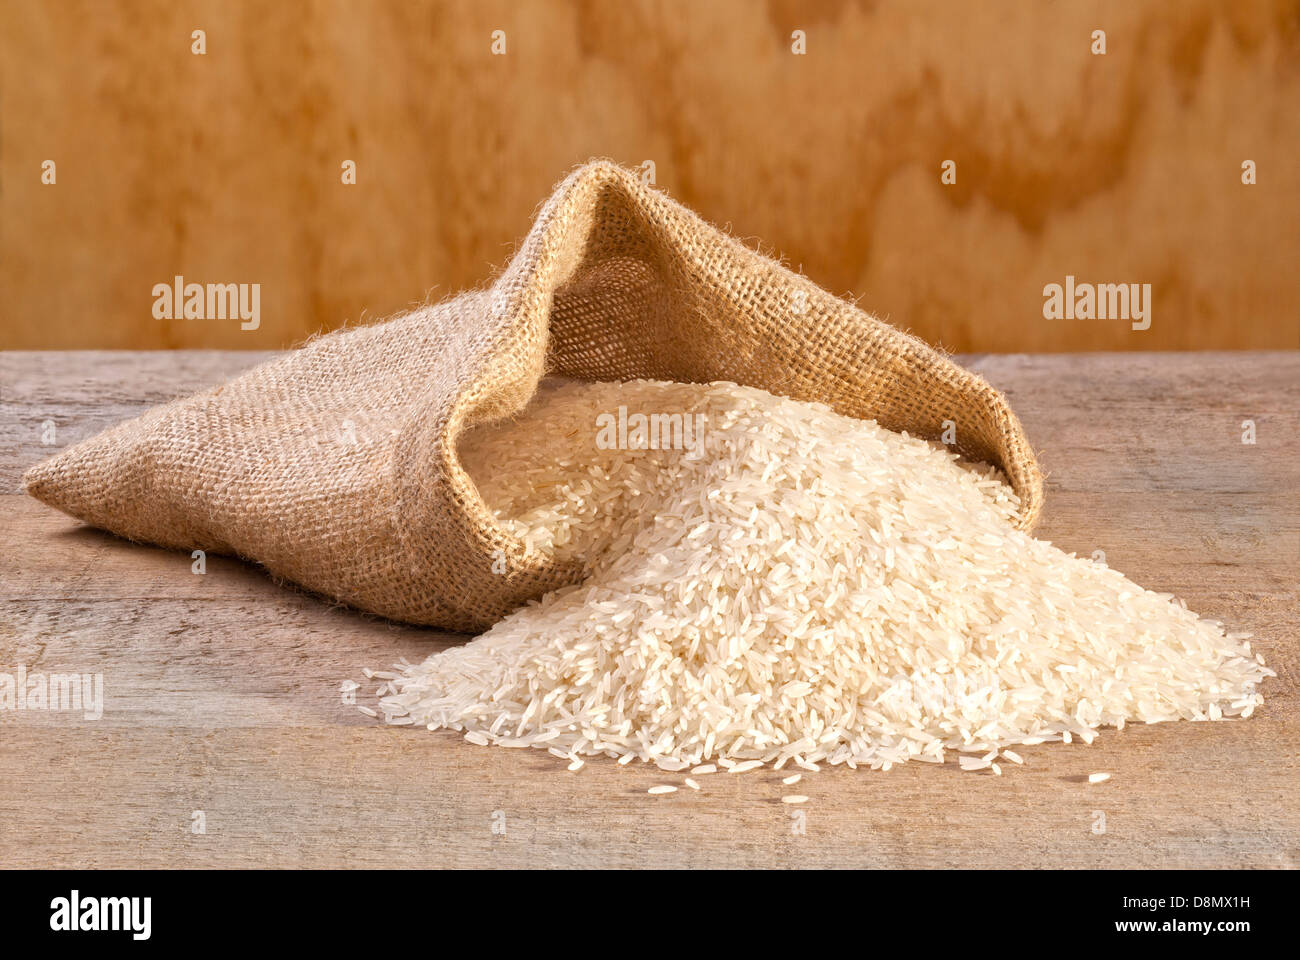 Il riso Basmati di fuoriuscita dal sacco - riso basmati di fuoriuscita dalla tela o sacco di iuta. Foto Stock